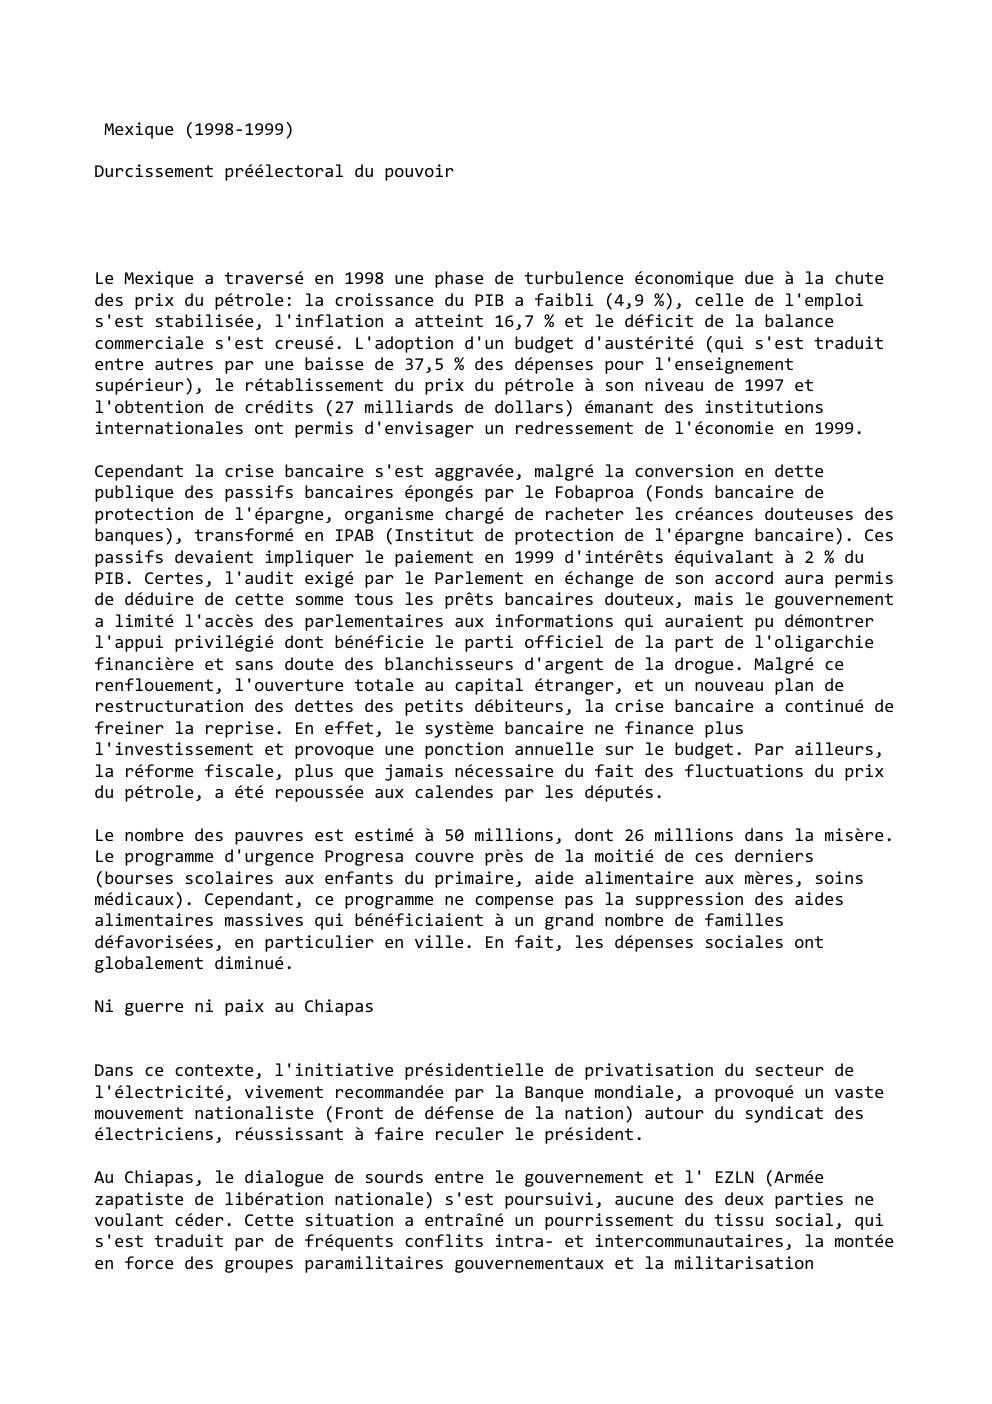 Prévisualisation du document Mexique (1998-1999)
Durcissement préélectoral du pouvoir

Le Mexique a traversé en 1998 une phase de turbulence économique due à la...